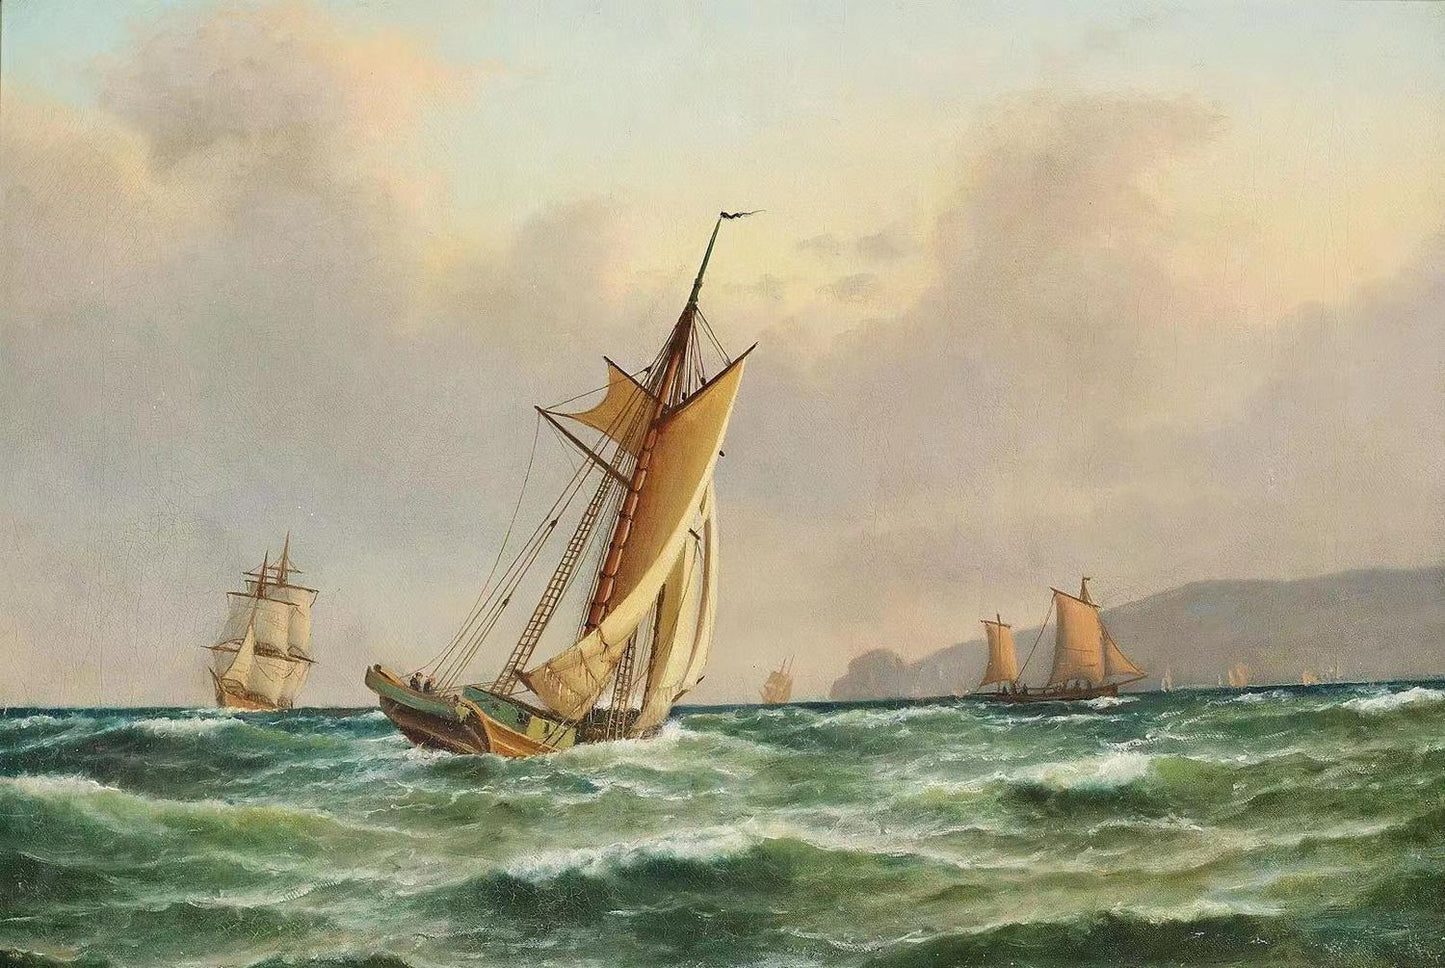 Marine med skibe ud for klippekysten,Carl Bille,1815-1898